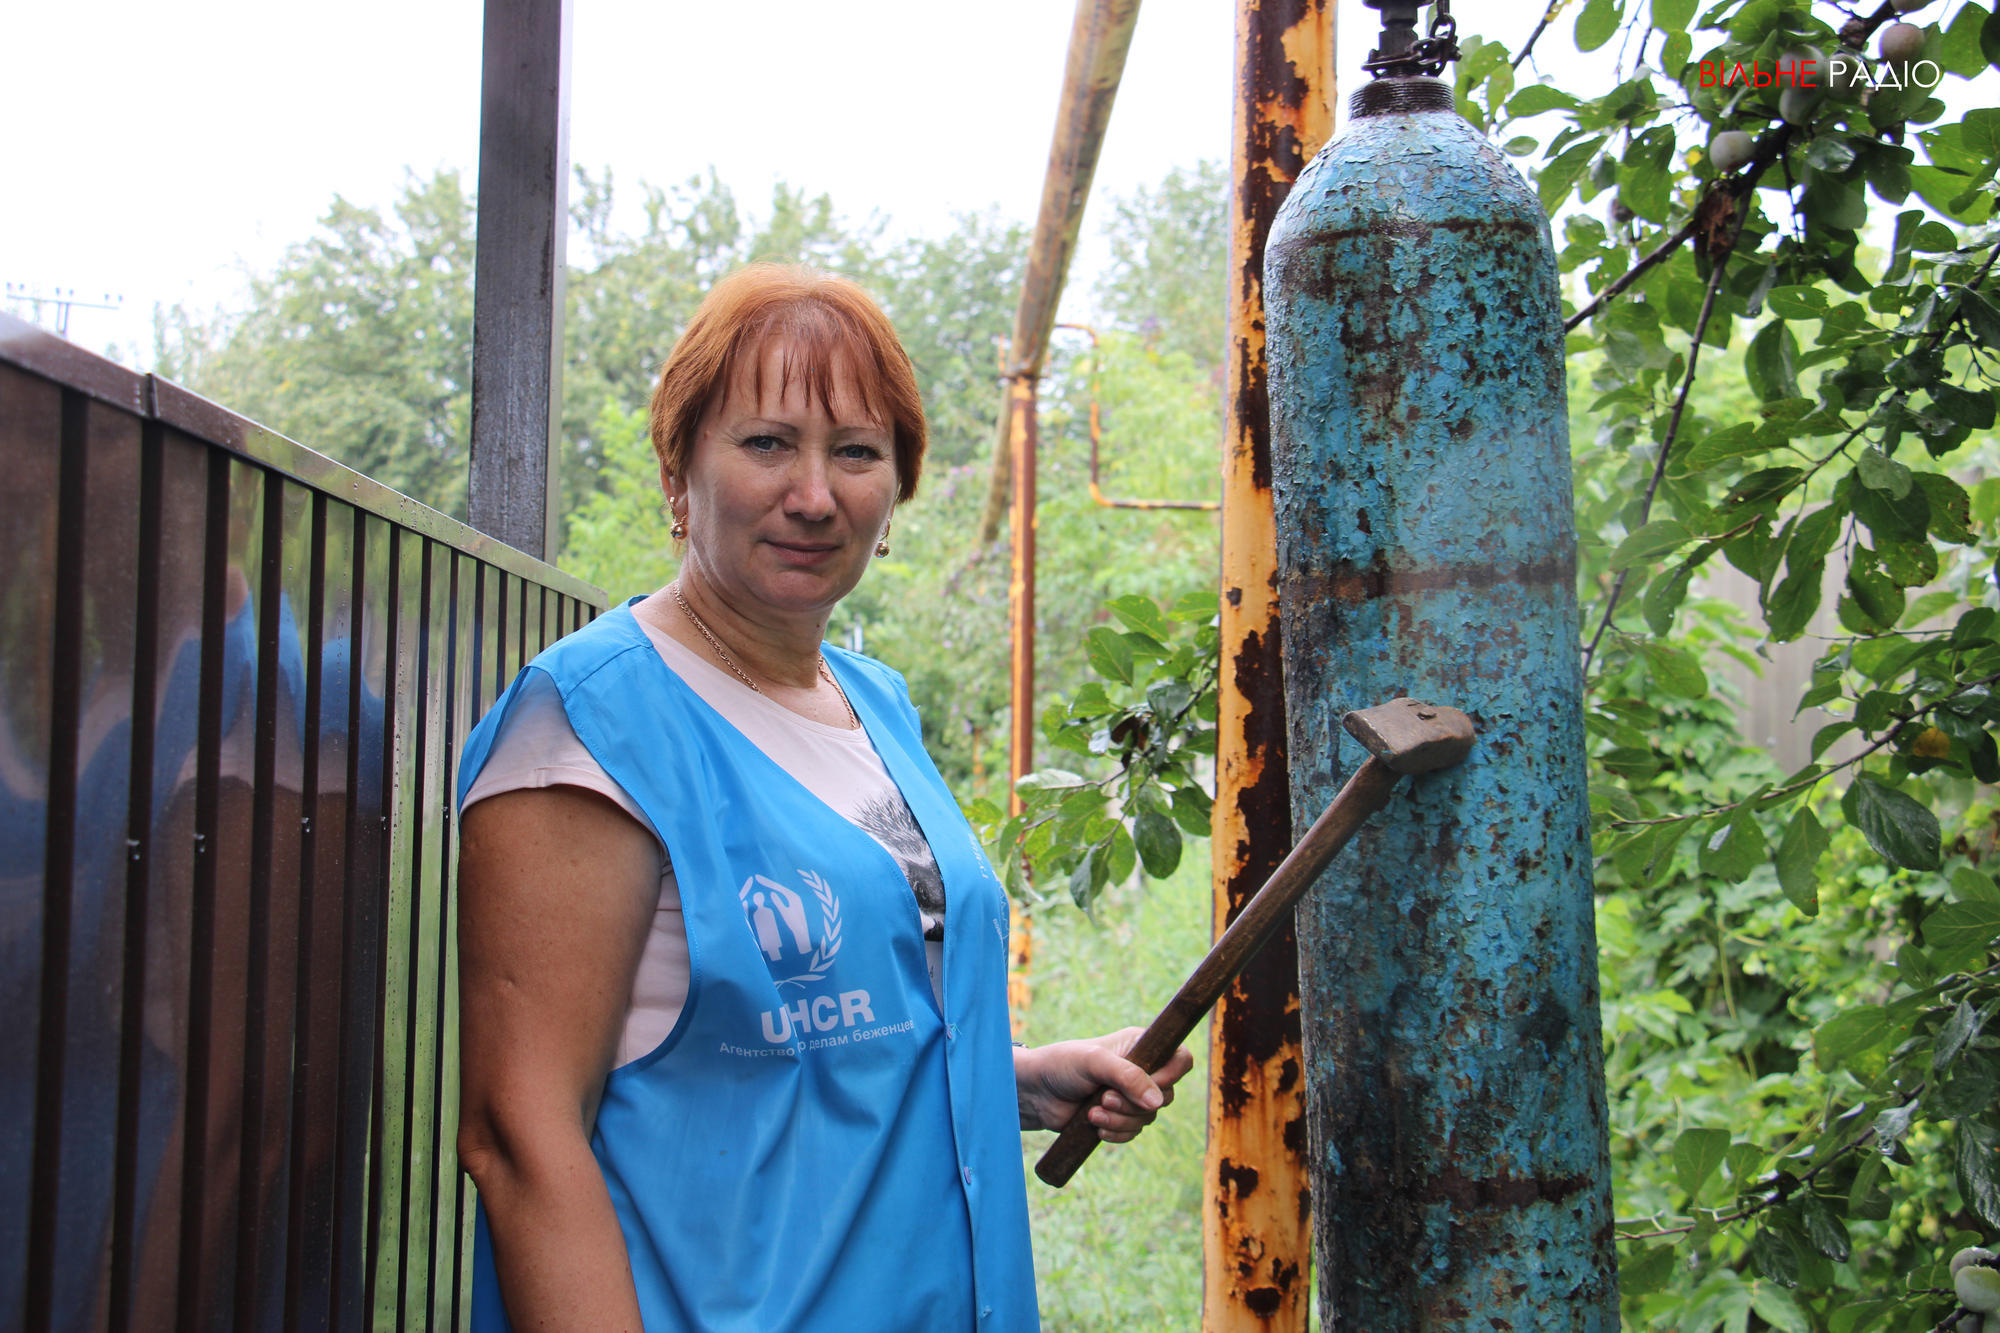 Жители Жованки в Донецкой области получили огнетушители от благотворителей